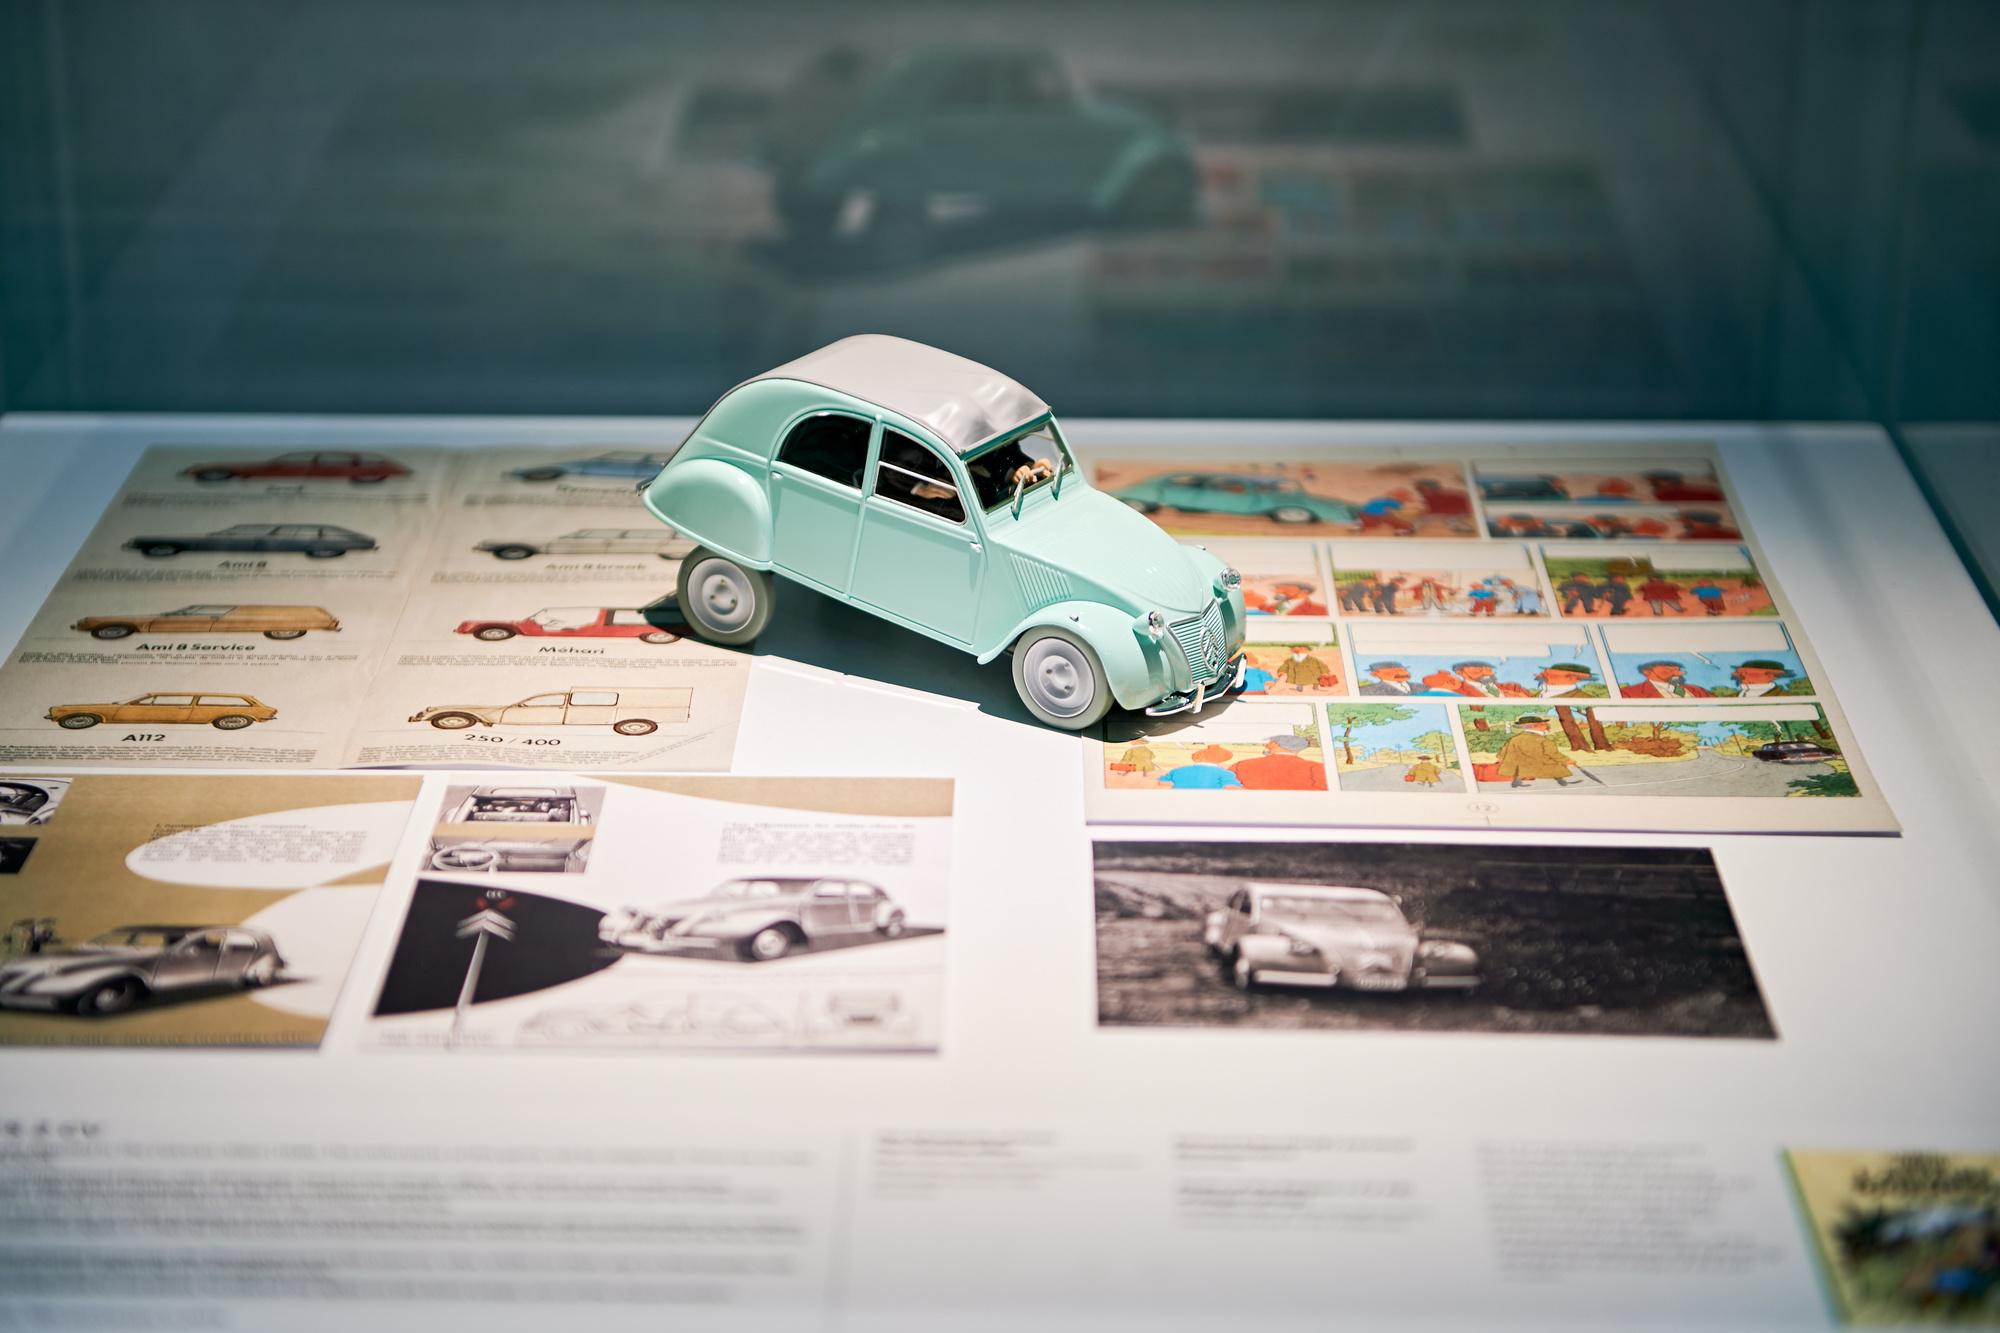 De nombreux documents accompagnés de miniatures vous replongent dans les aventures de Tintin.